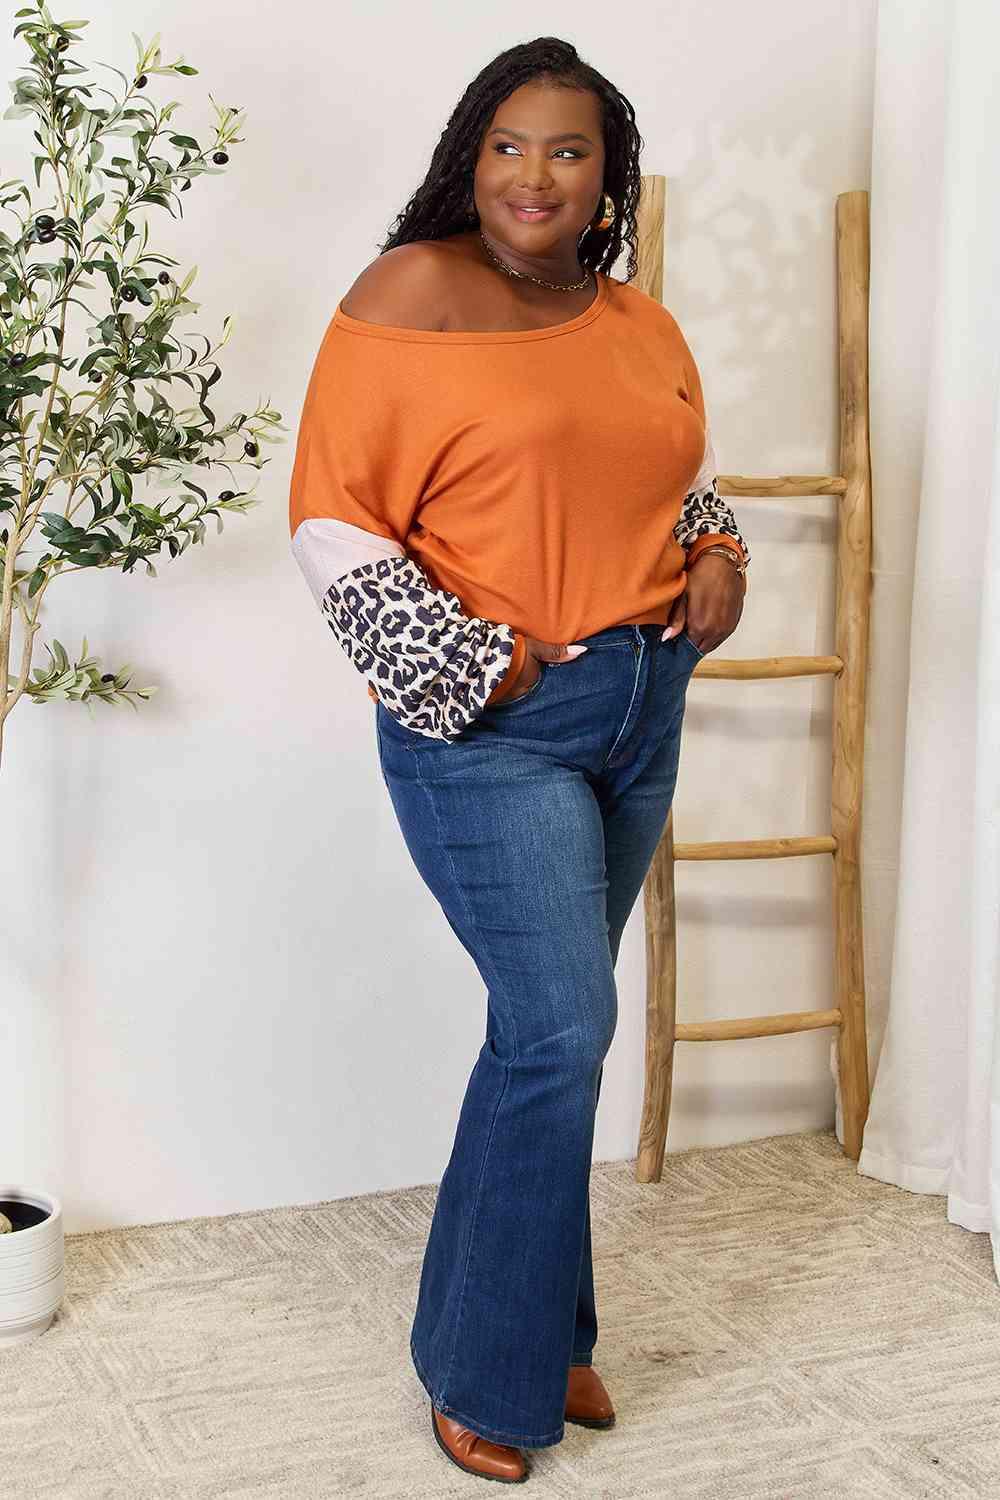 Double Take Leopard Long Sleeve Sweater - Jessiz Boutique